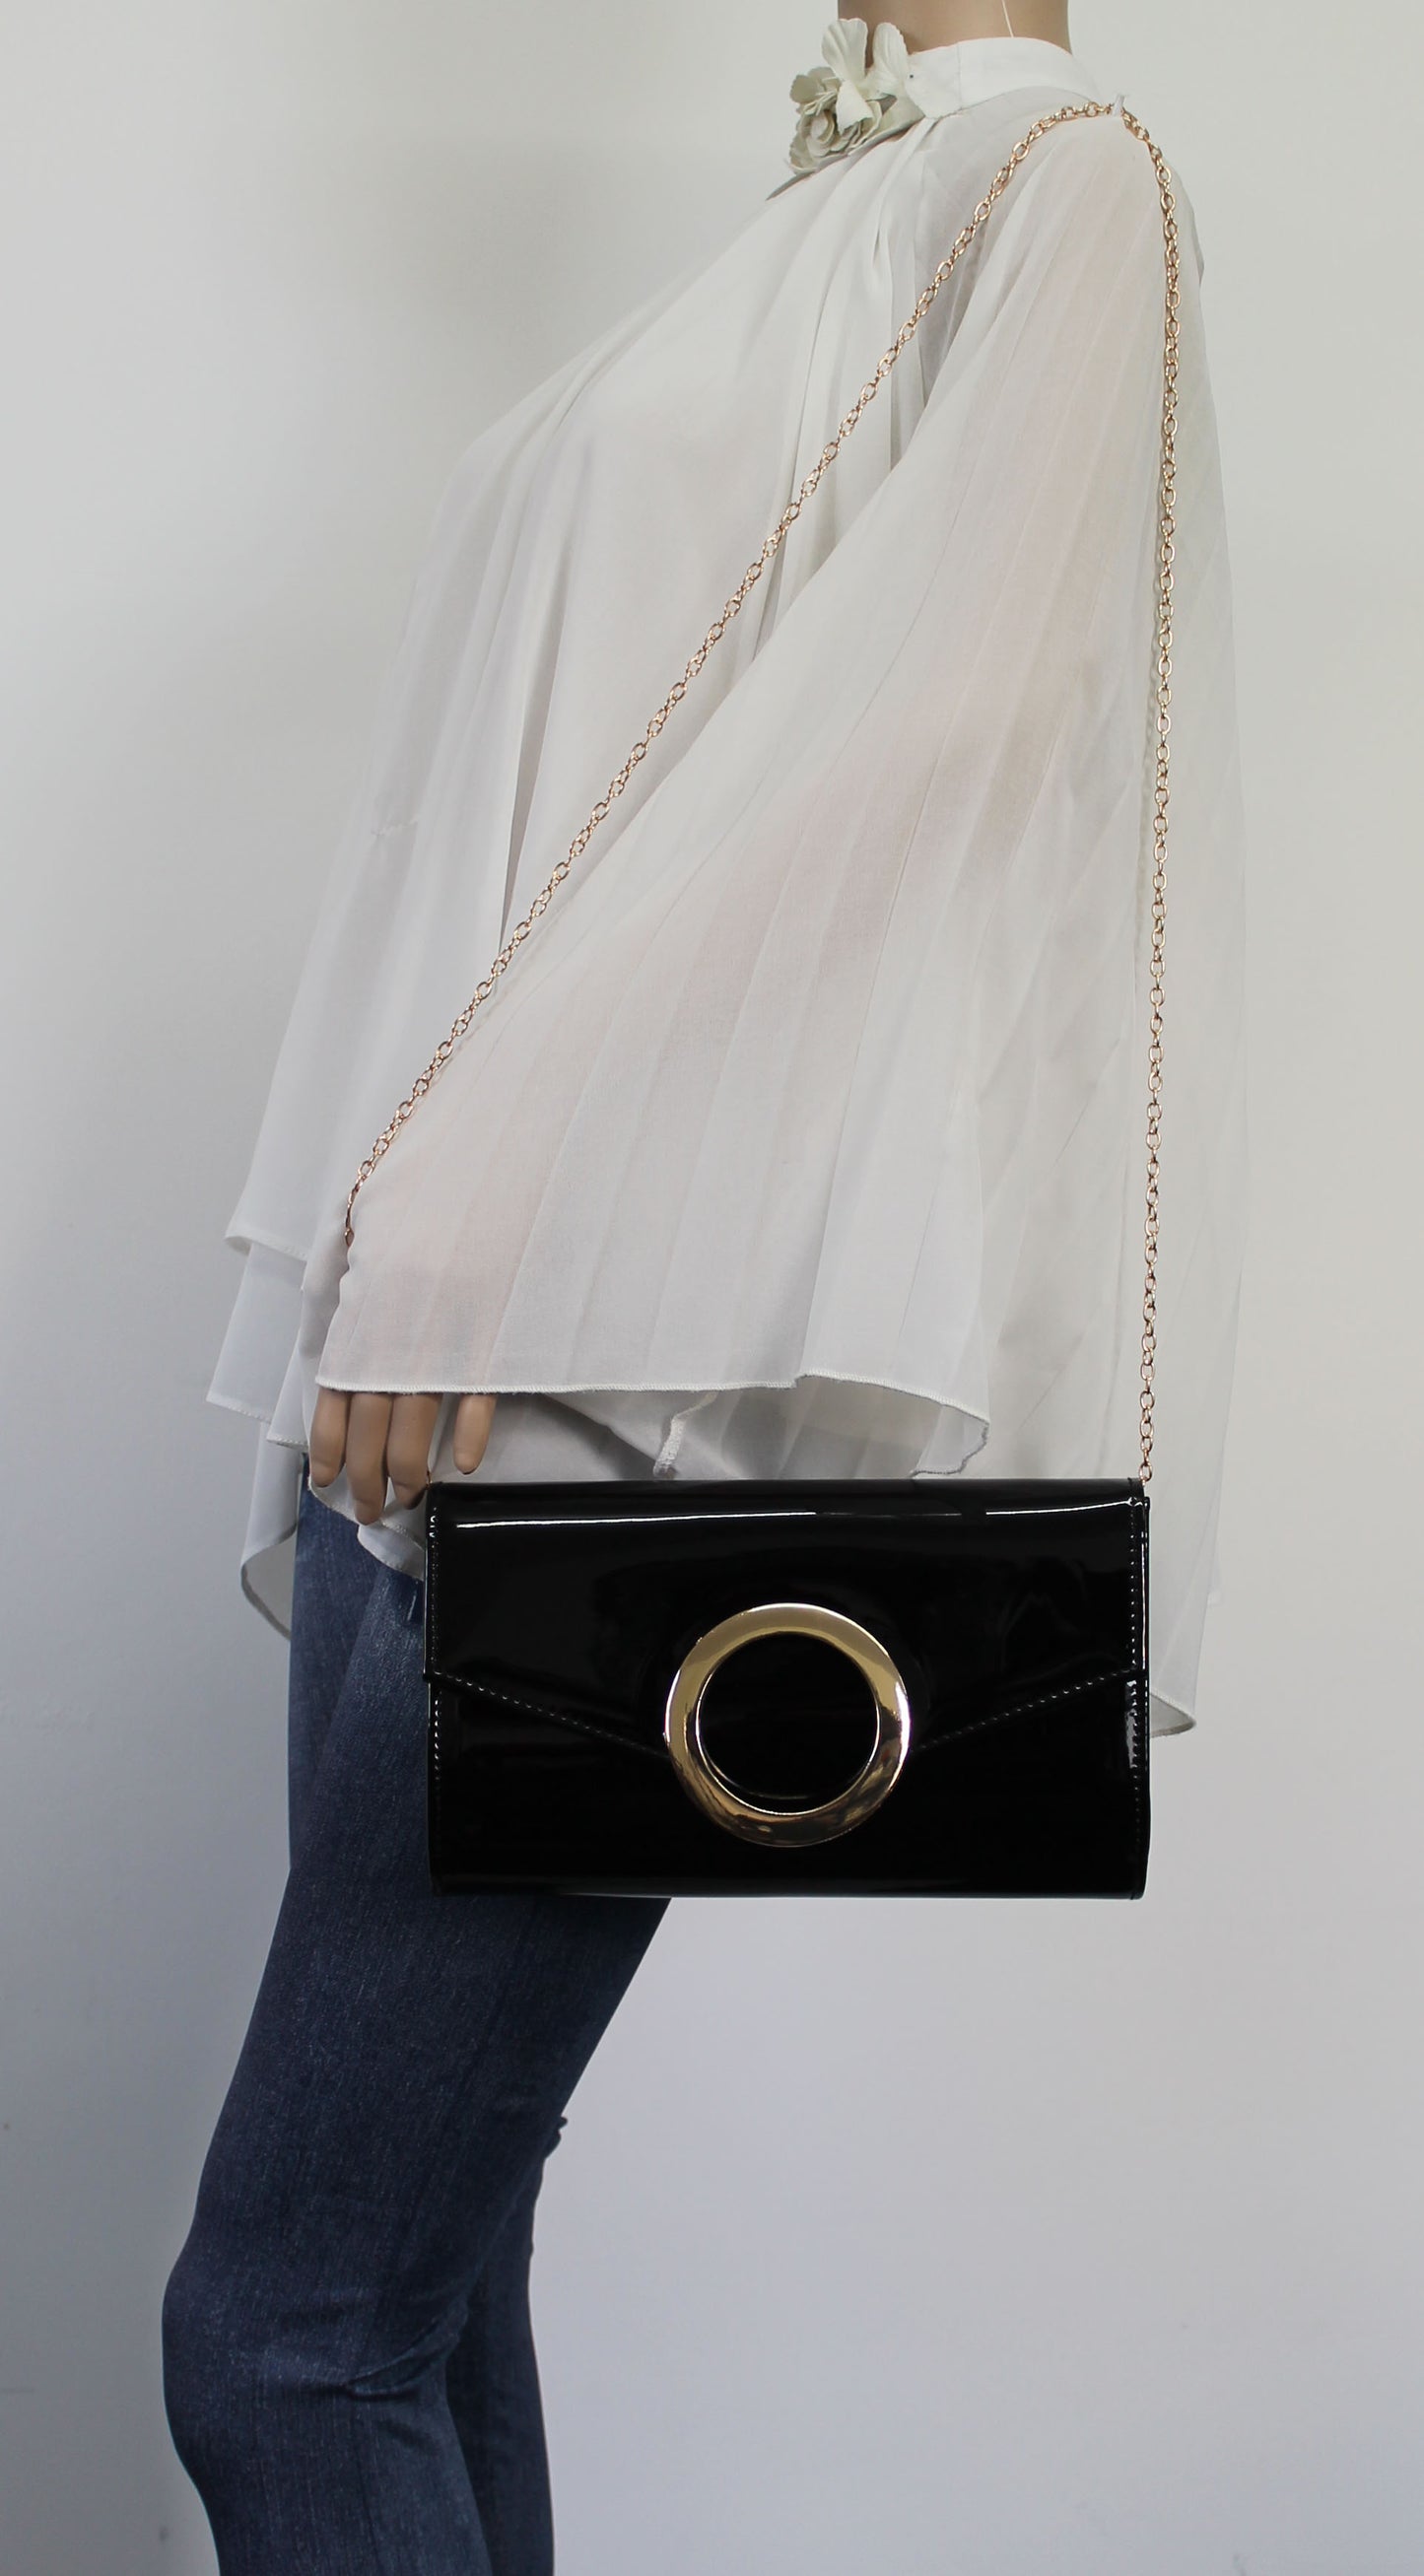 SWANKYSWANS Marnie Clutch Bag Black Cute Cheap Clutch Bag For Weddings School and Work